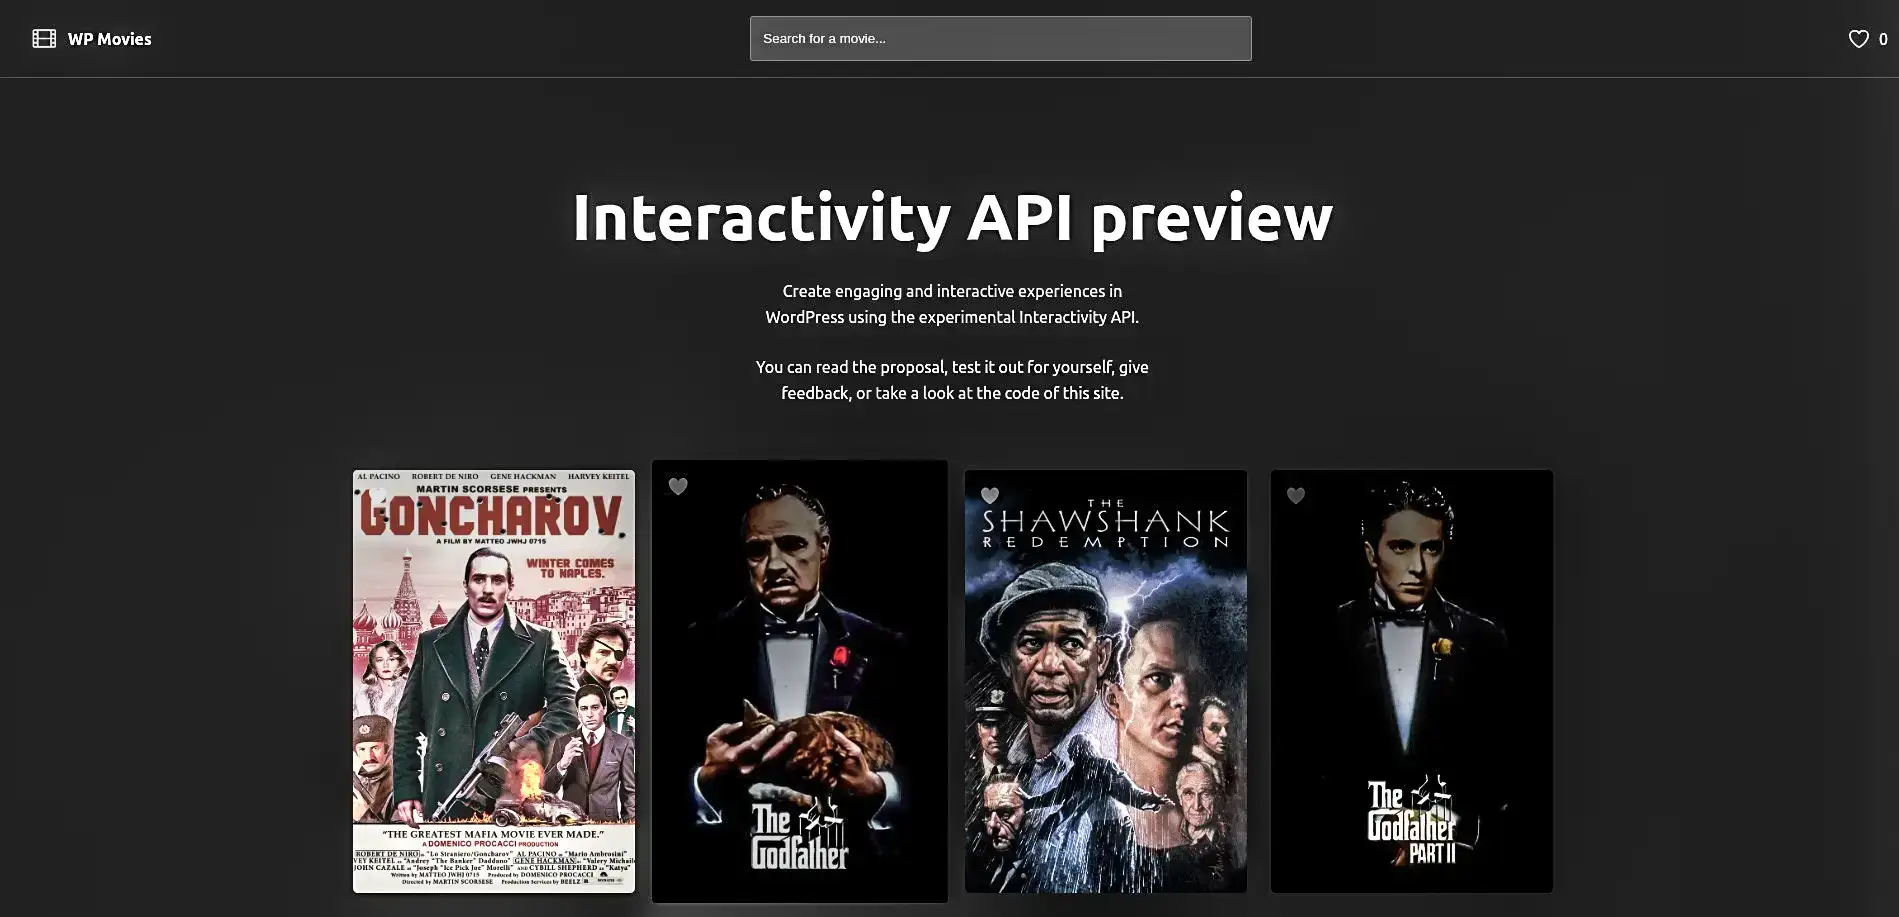 interactivity-API